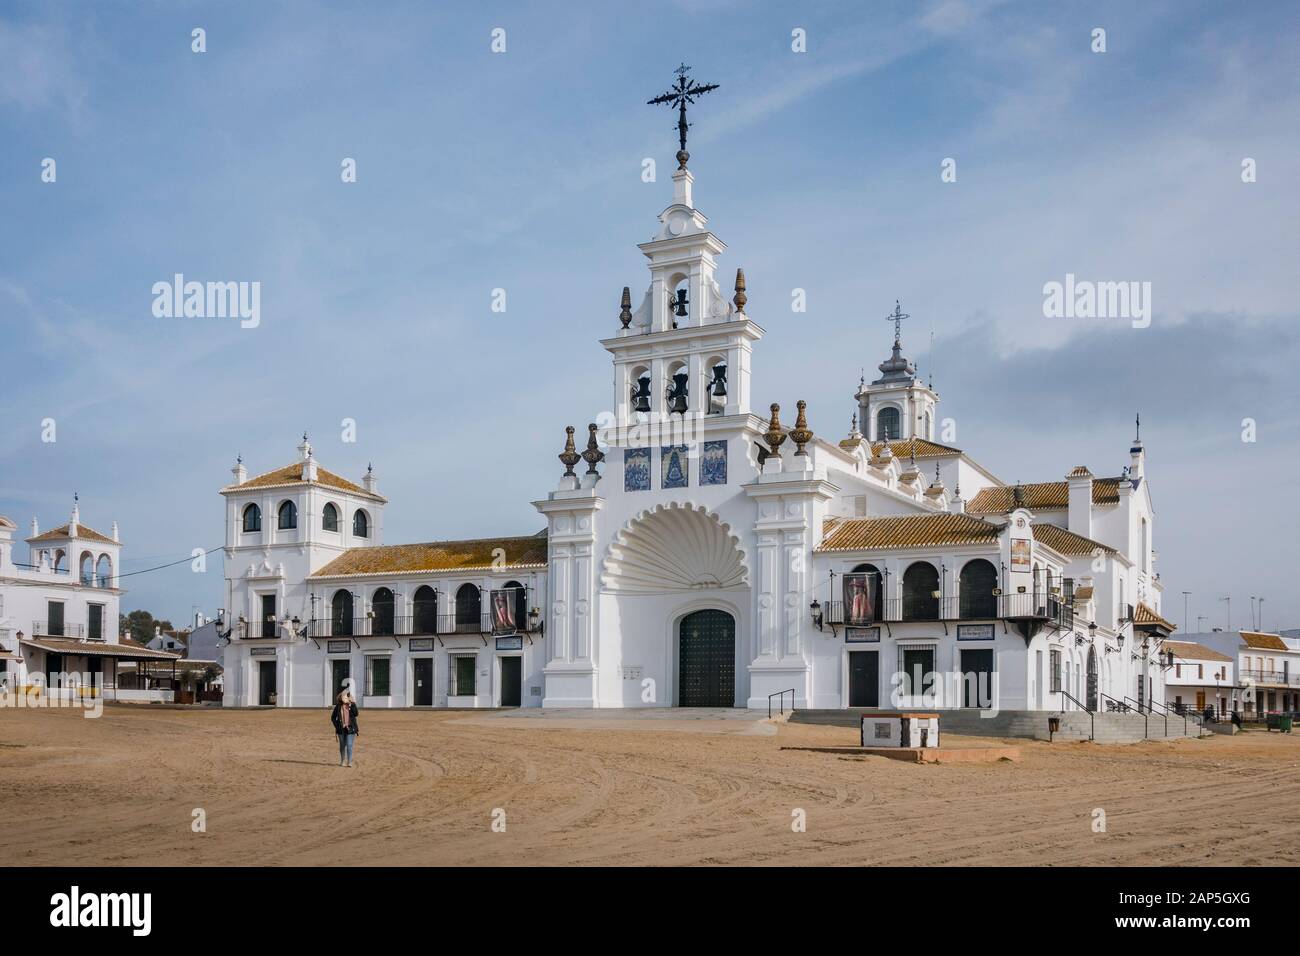 El Rocio Spagna, chiesa, Eremo della Vergine di El Rocio, al parco nazionale di Marismas Doñana, Andalusia, Spagna, Europa Foto Stock